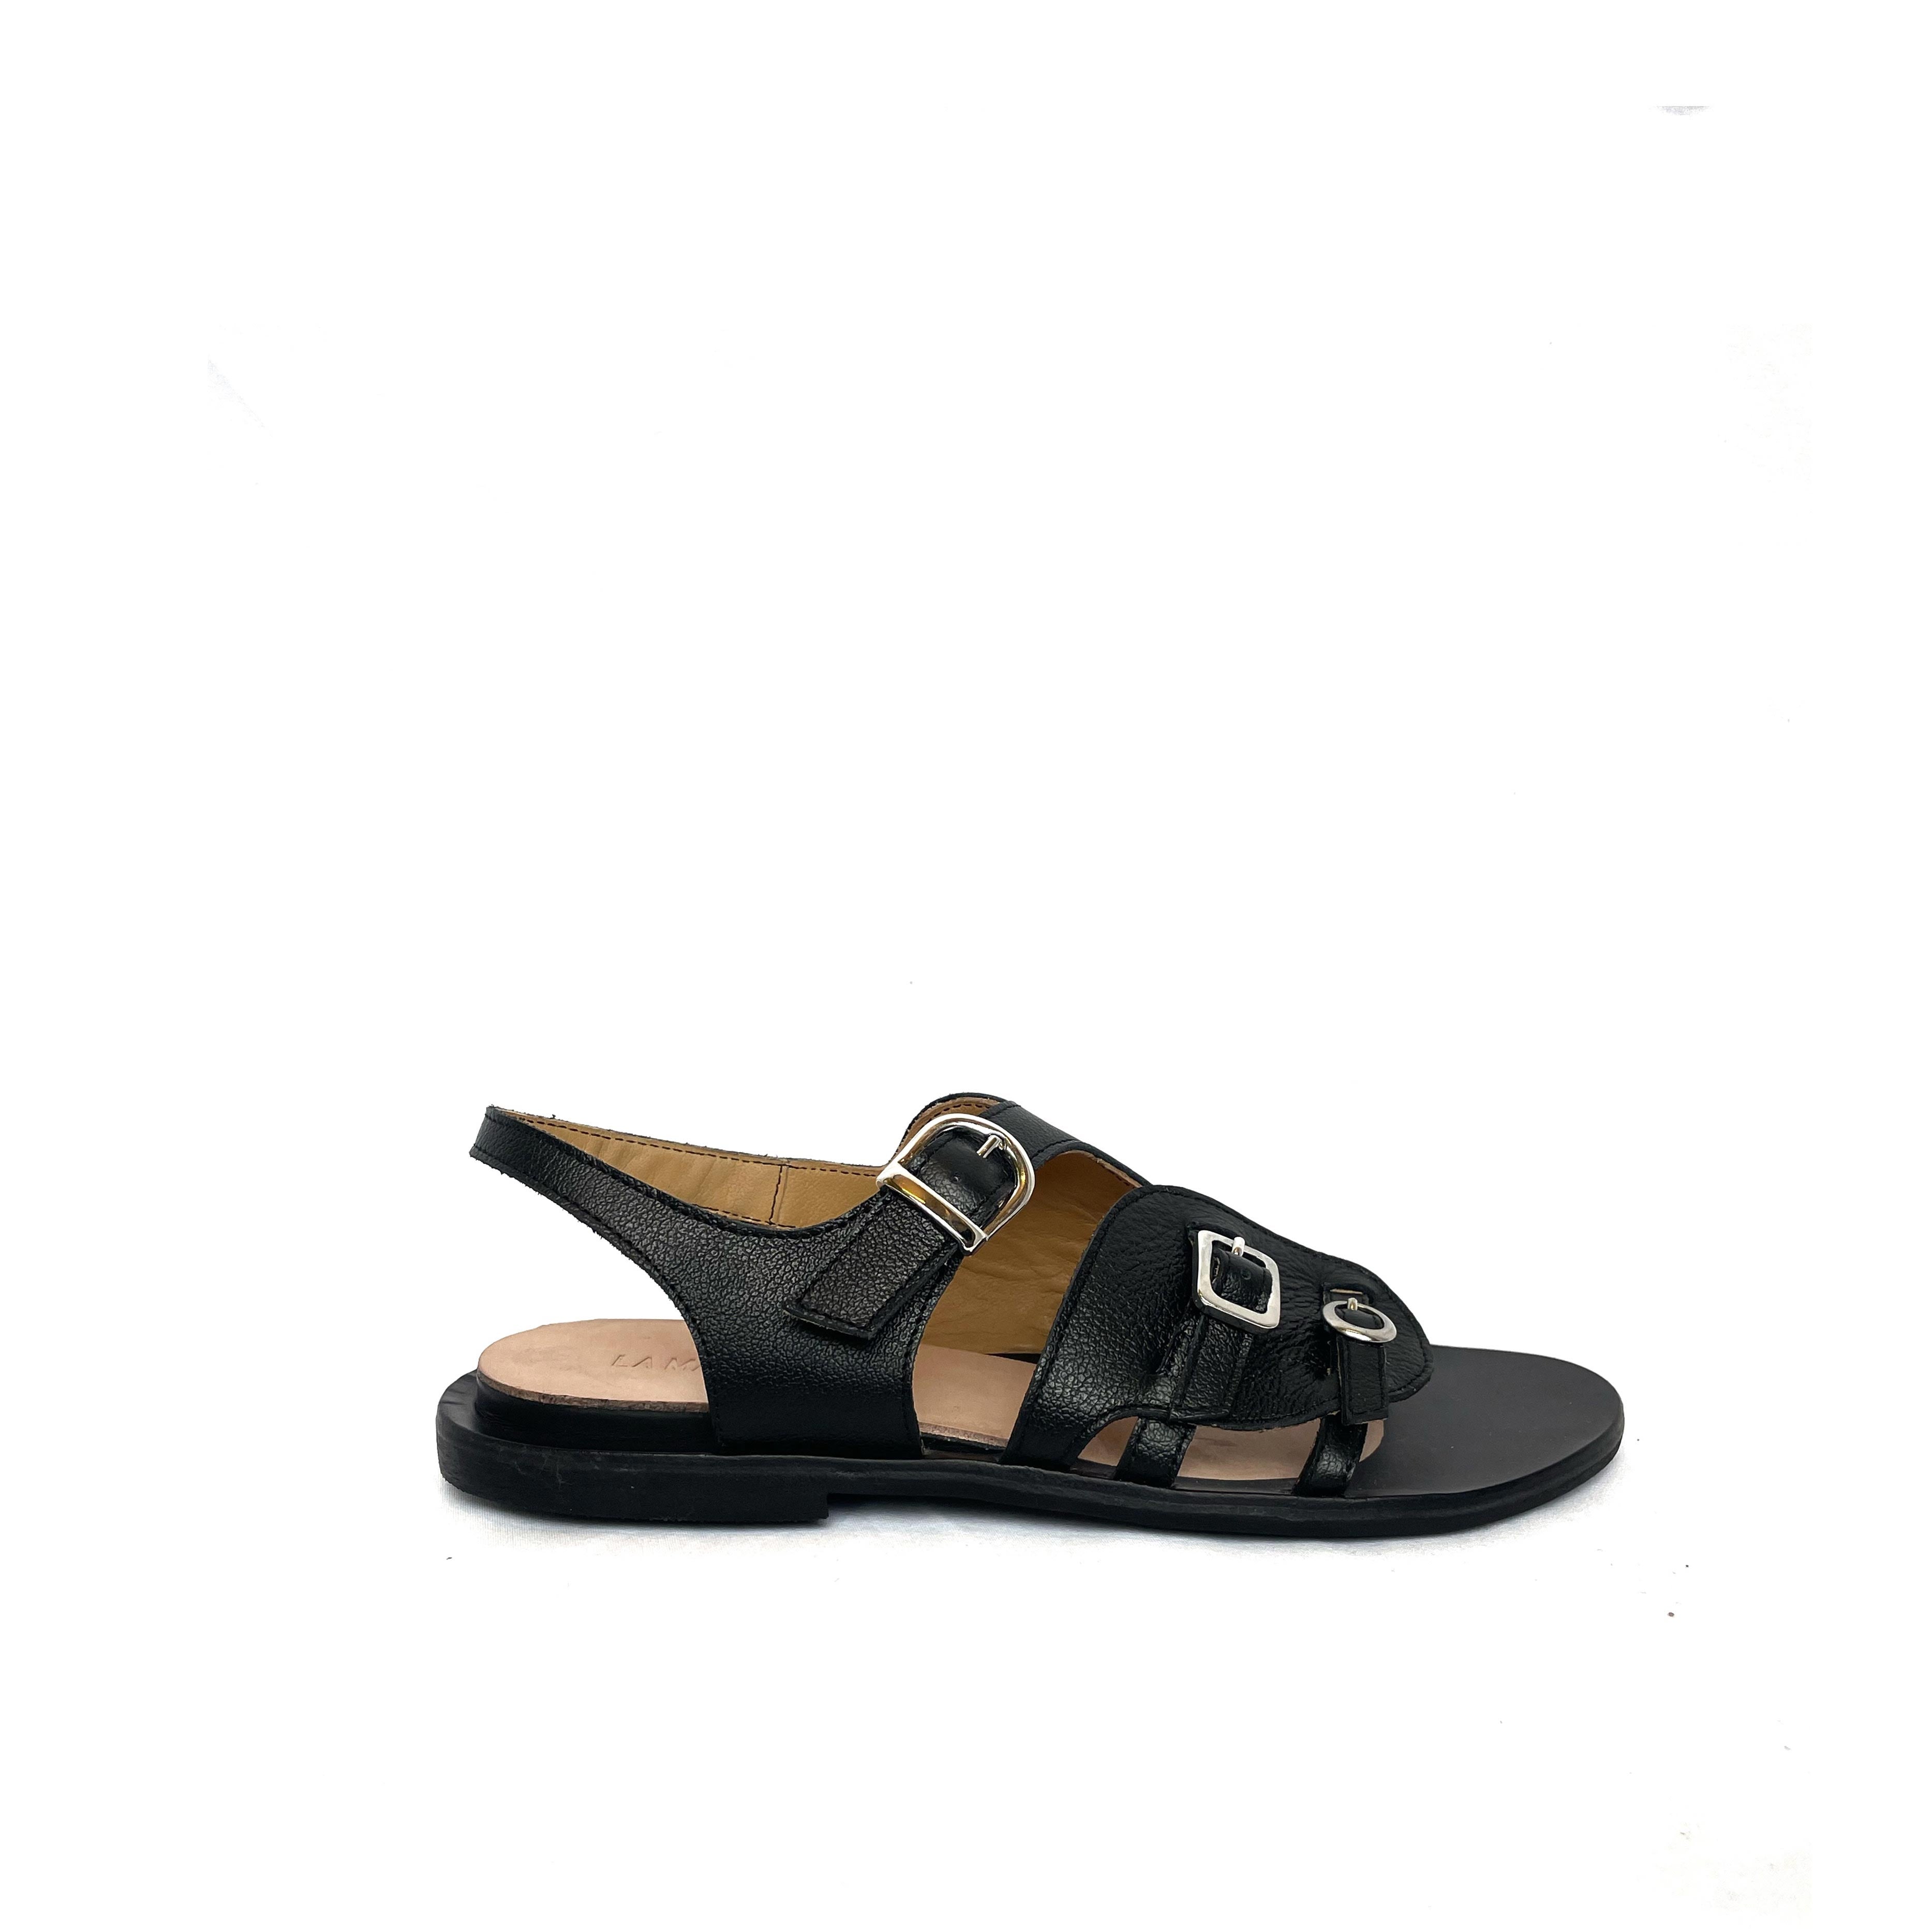 sandalo unisex pelle nero con fibbia comodo calzata standard